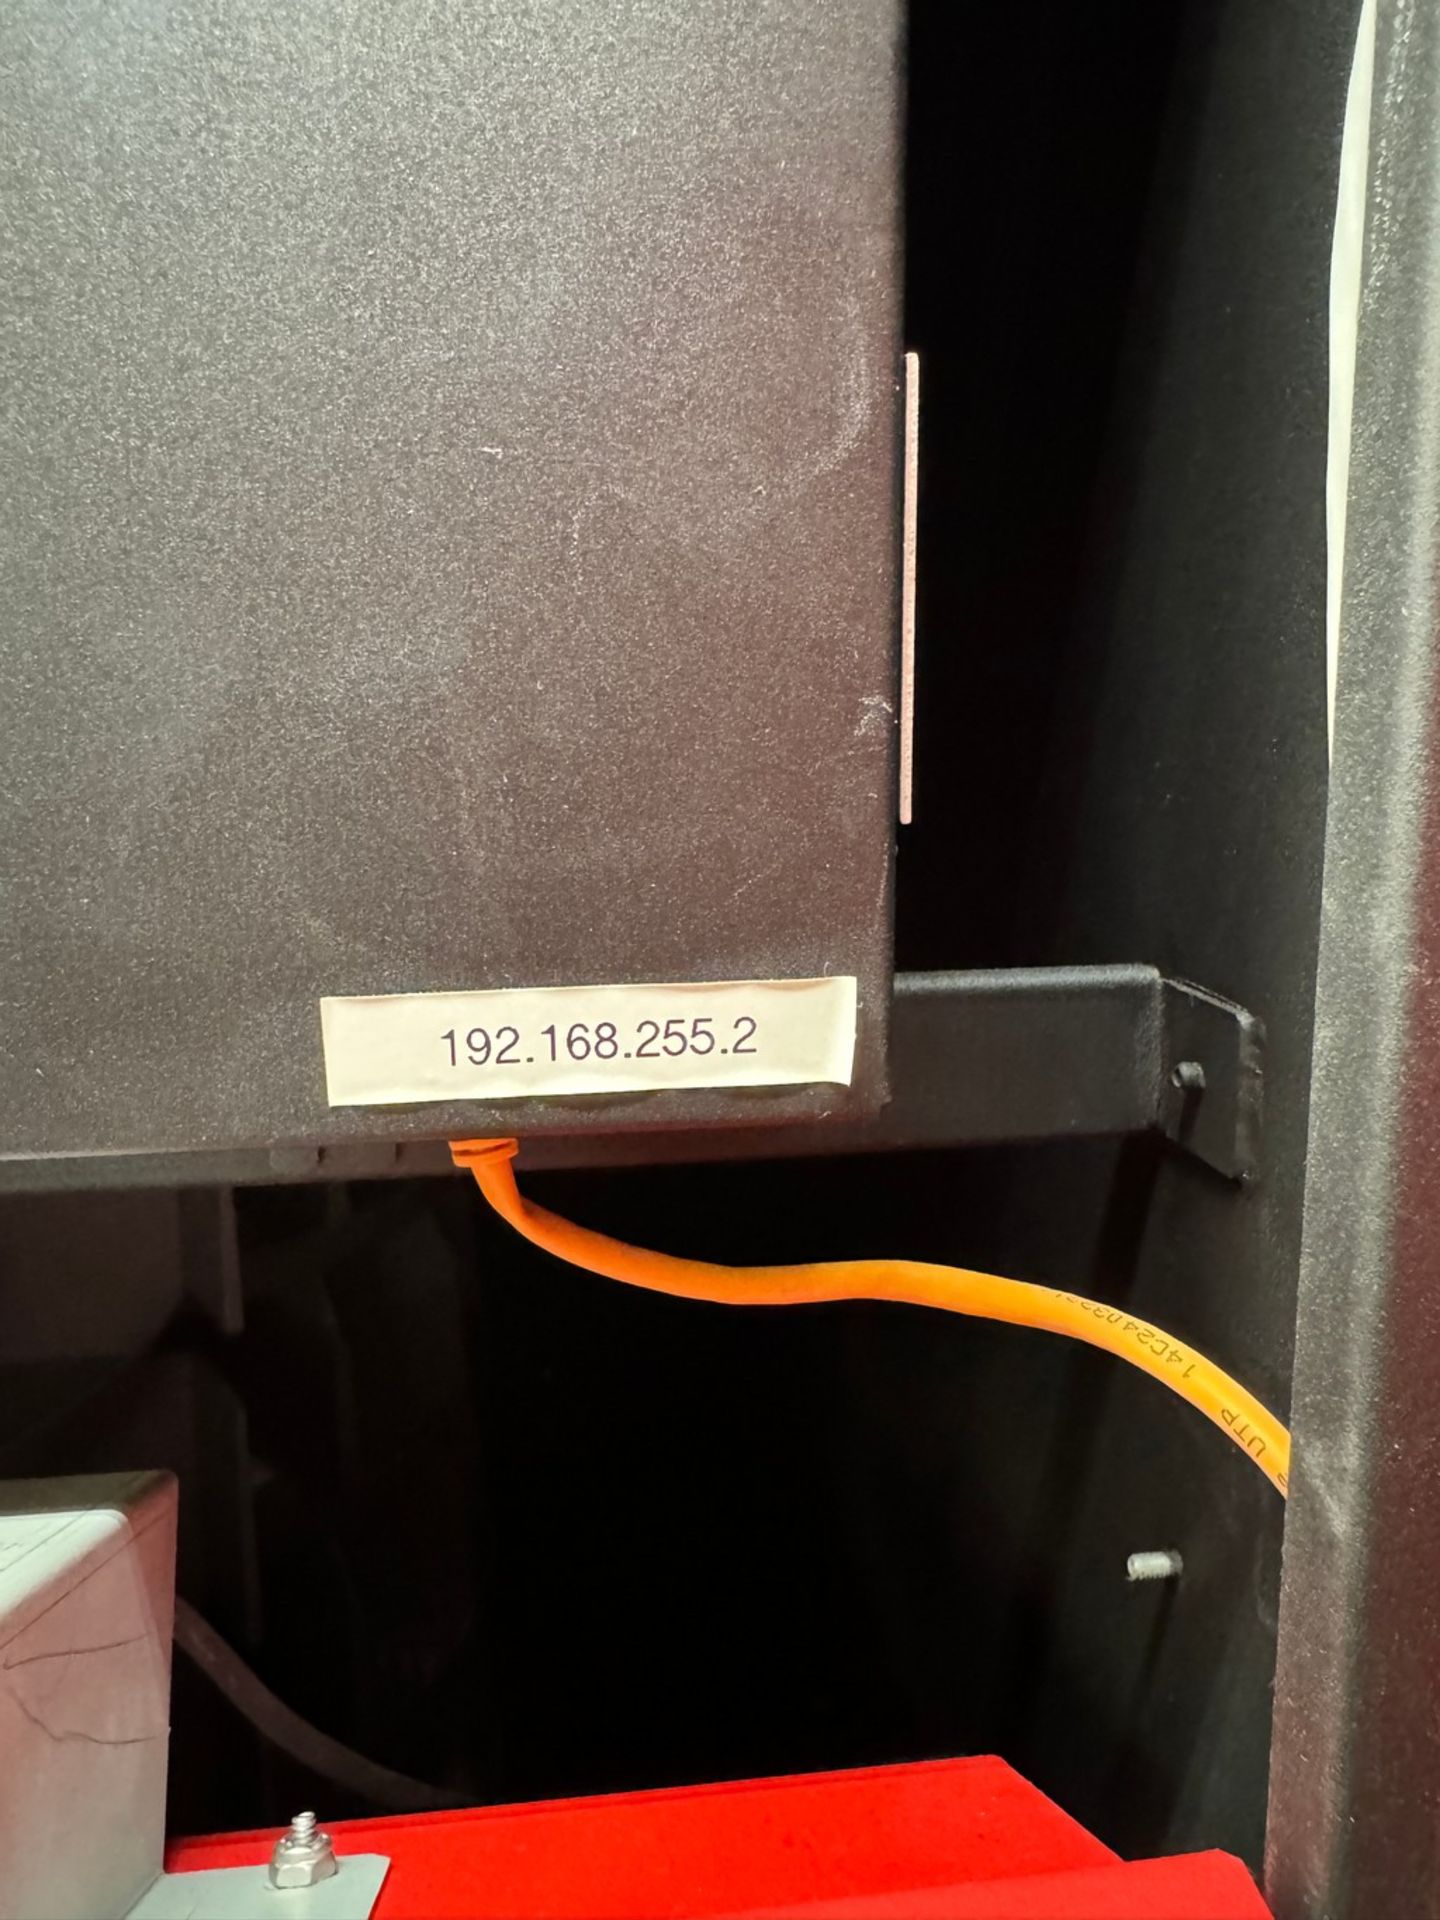 AutoCrib RoboCrib VX500 Industrial Tool Dispensing Machine - Image 5 of 5